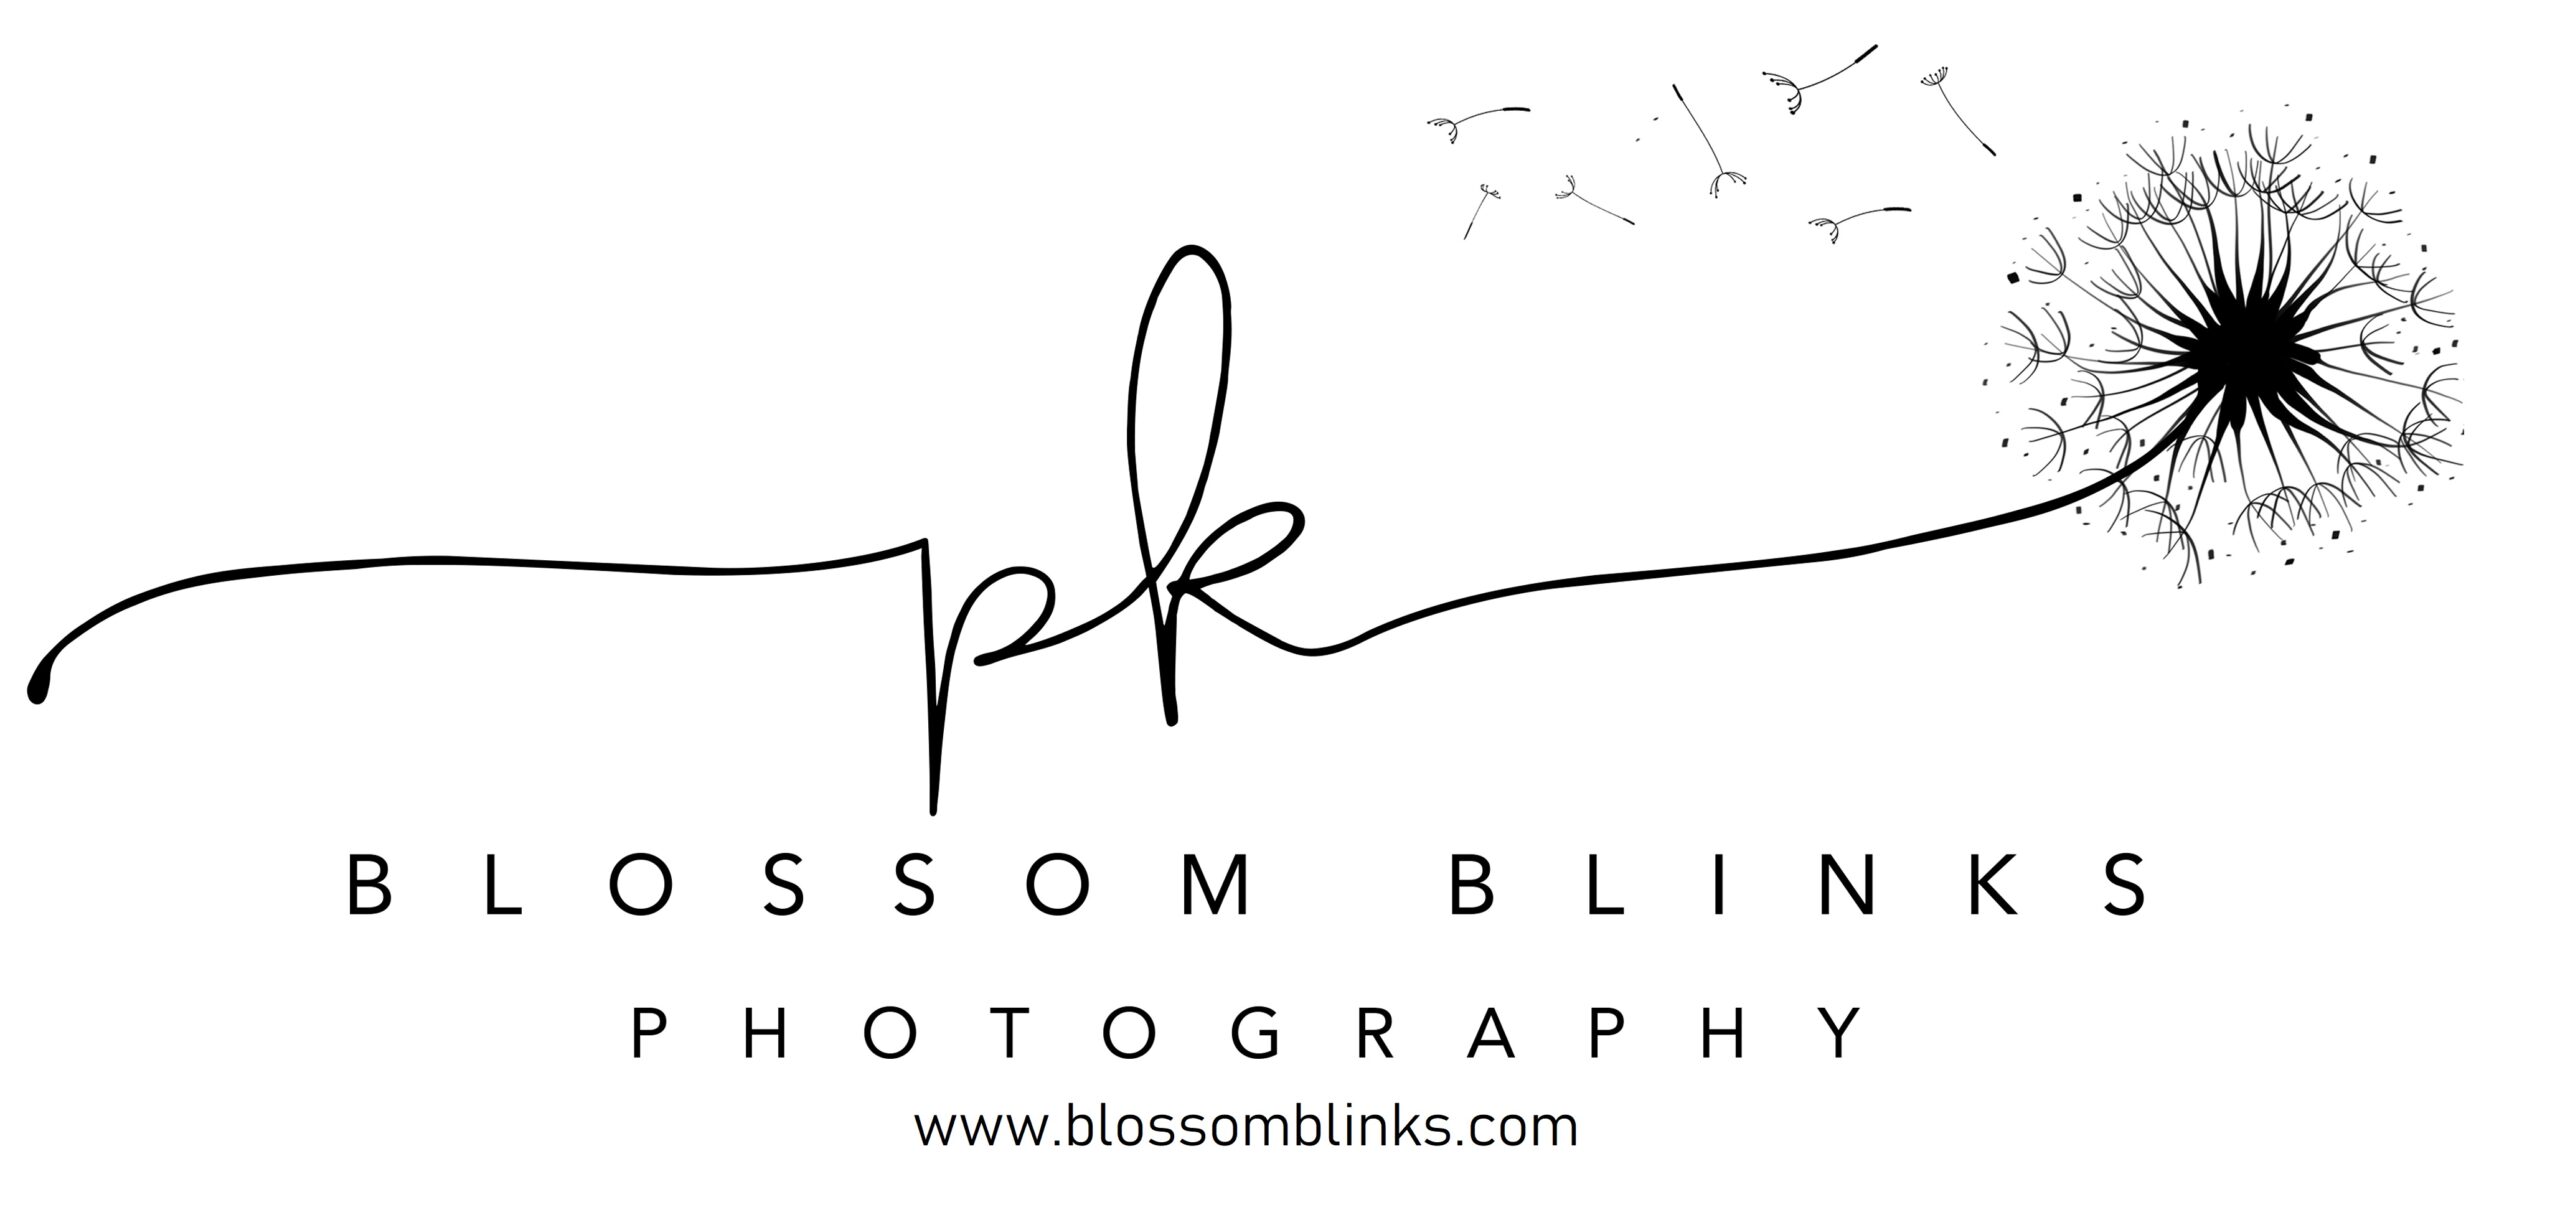 Blossom Blinks Photography logo